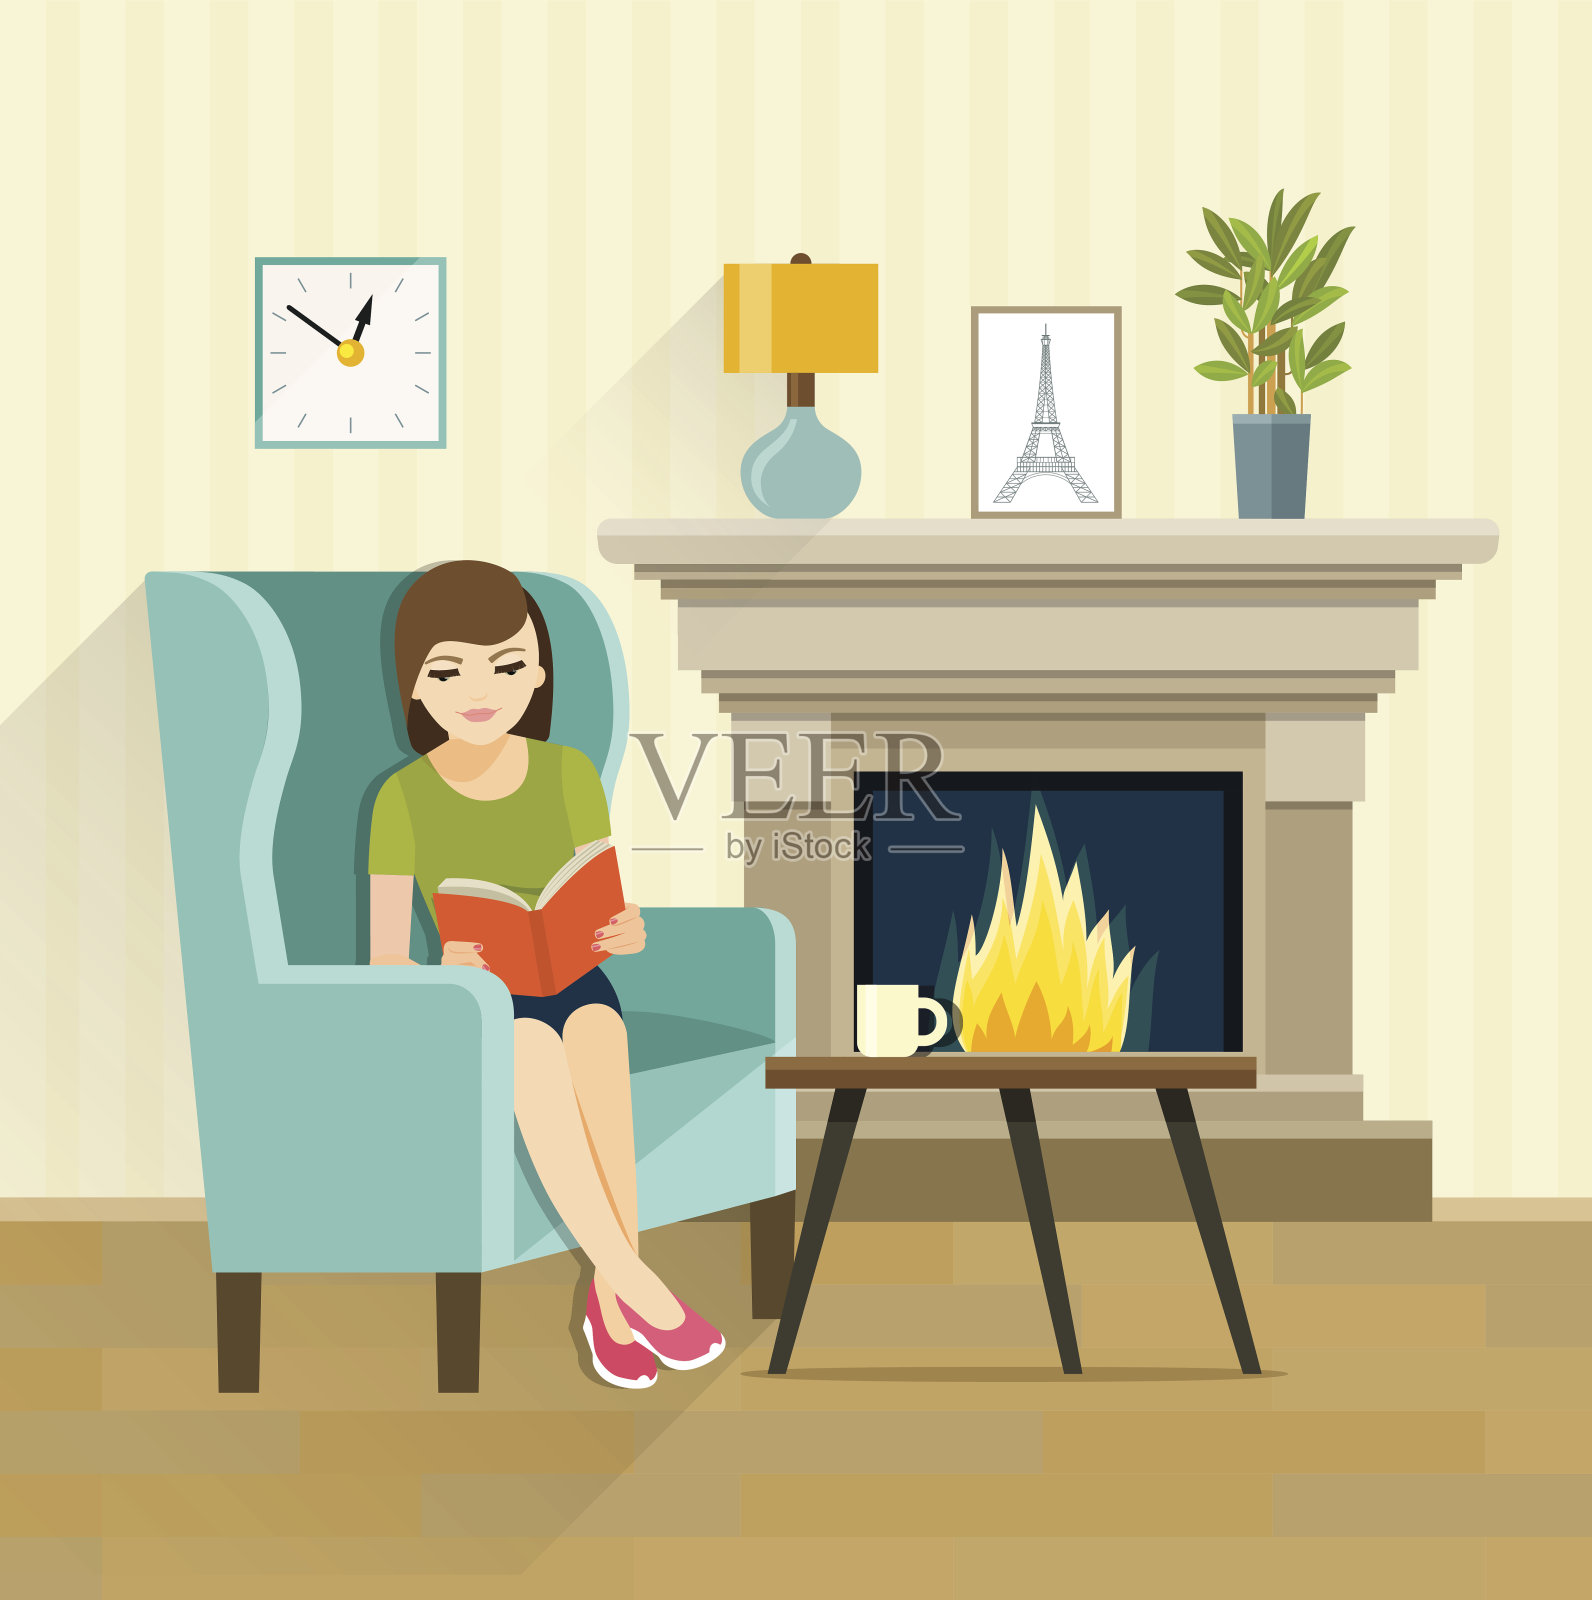 女孩在壁炉旁看书。矢量平面插图插画图片素材